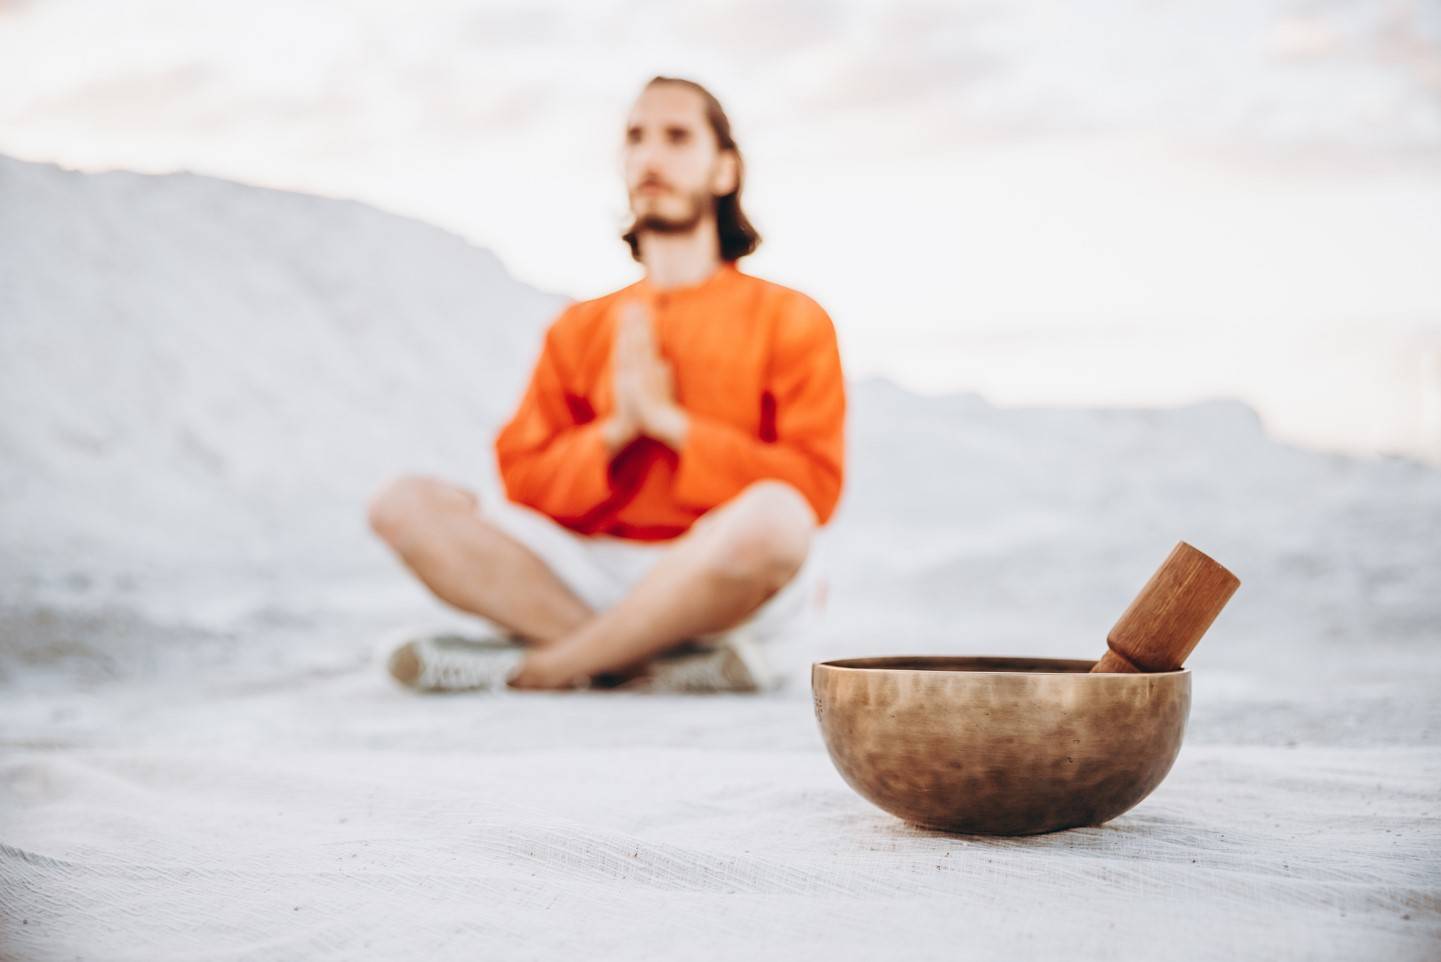 Мужчина в медитации и чаша для медитации